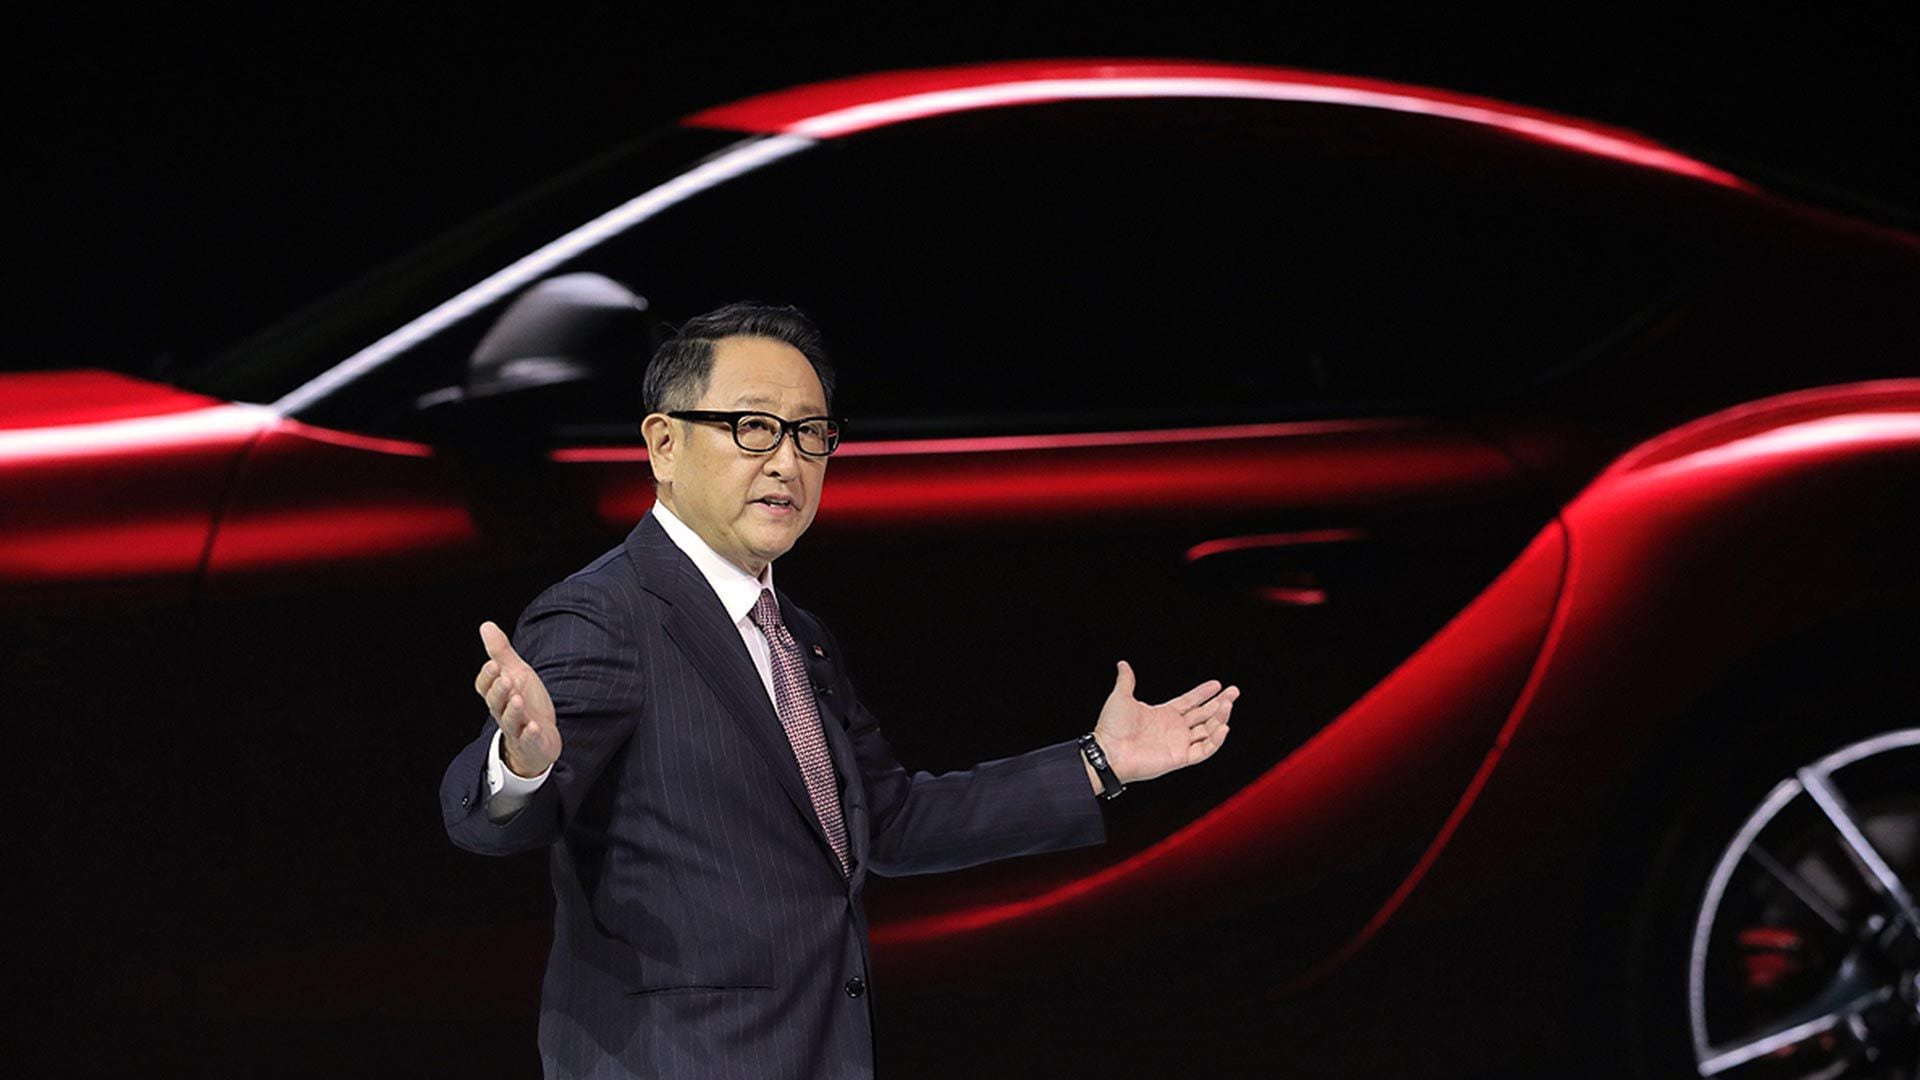 Akio Toyoda, CEO de Toyota Motor Corporation, es uno de los empresarios de la industria que teme por una gran desocupación cuando las fábricas se conviertan a ser solo productores de autos eléctricos